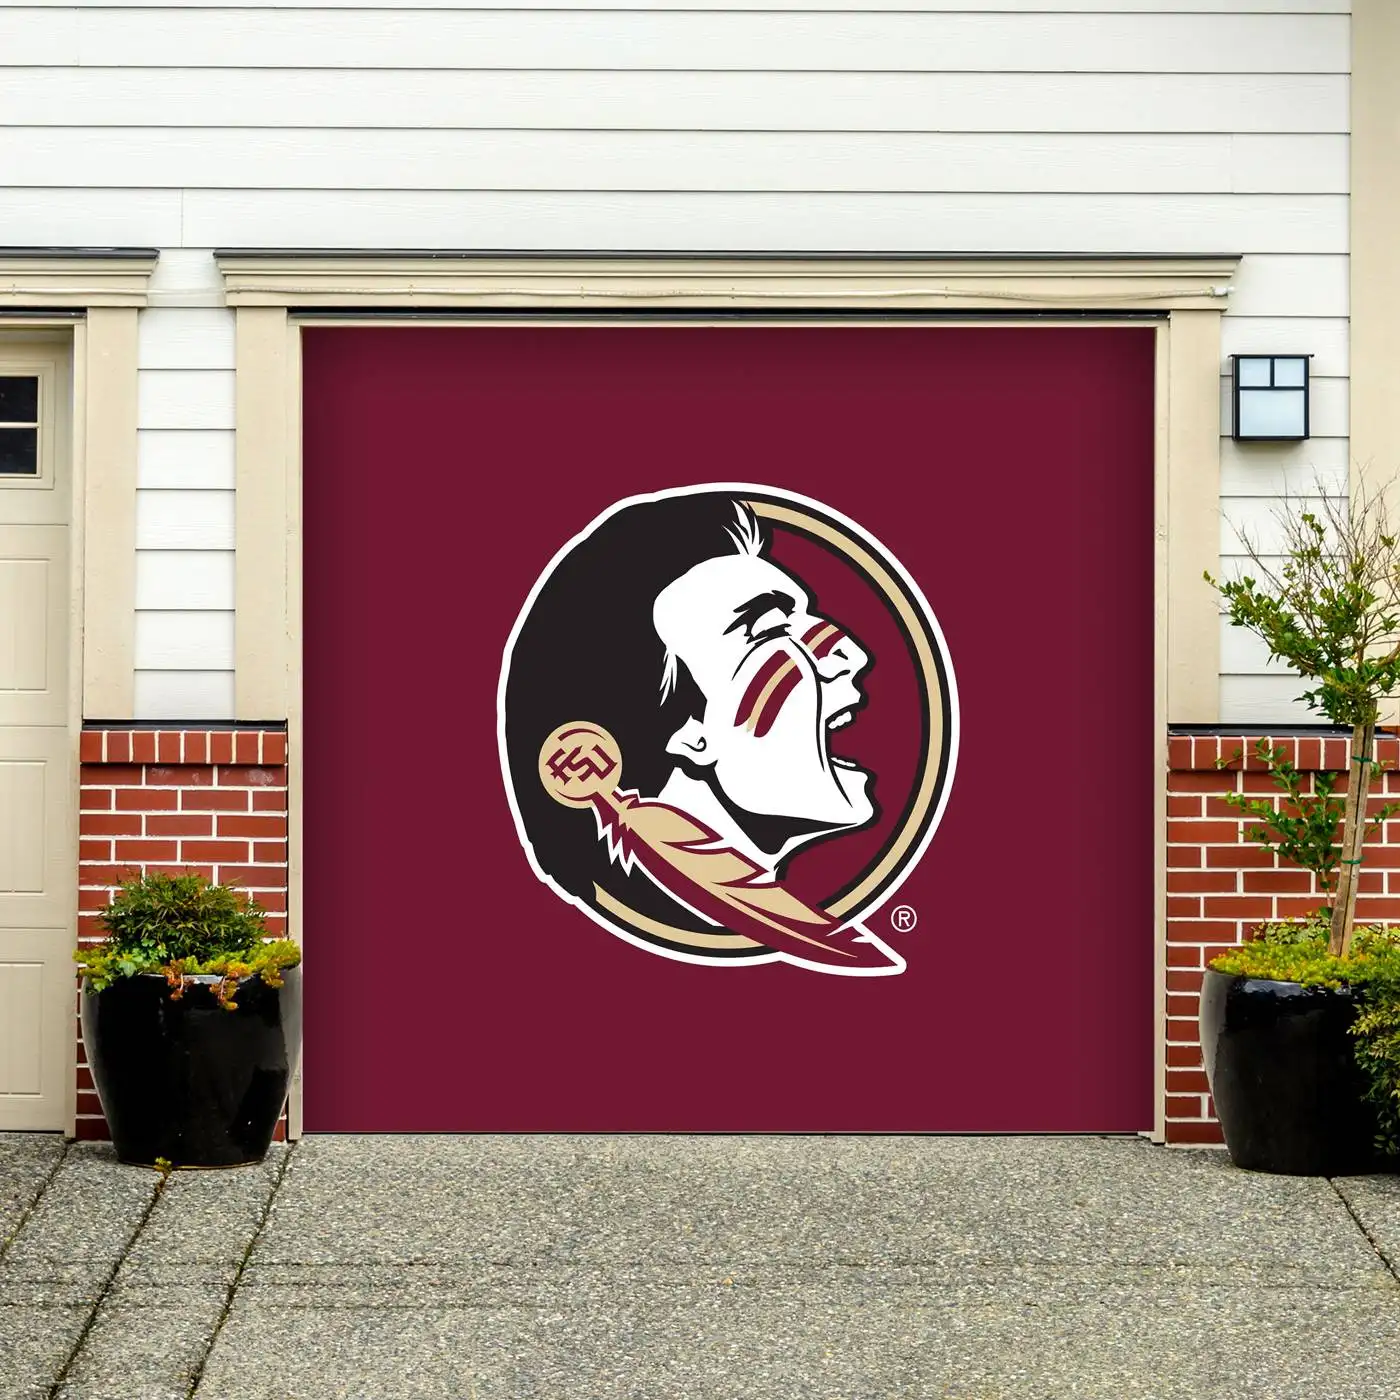 Florida State Seminoles Single Garage Door Banner Door Mural Outdoor Decoration